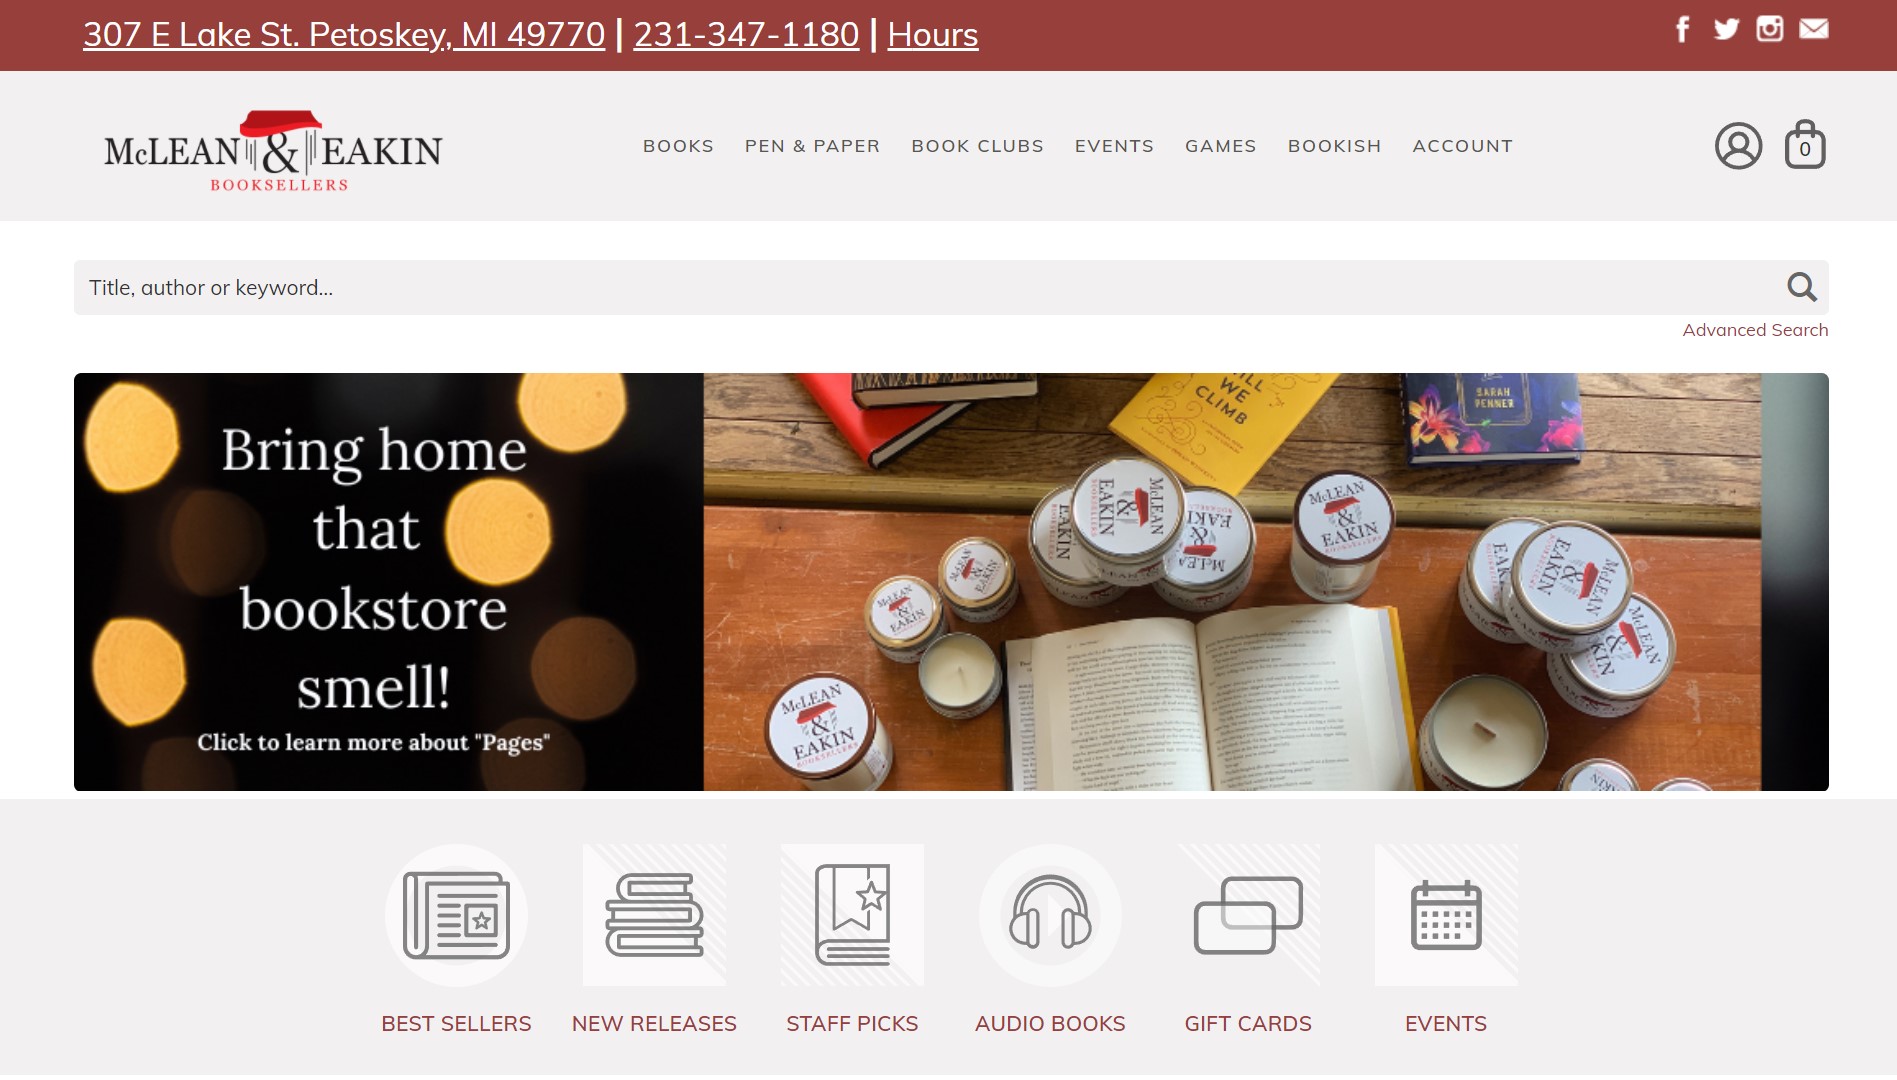 McLean and Eakin Bookstore's website